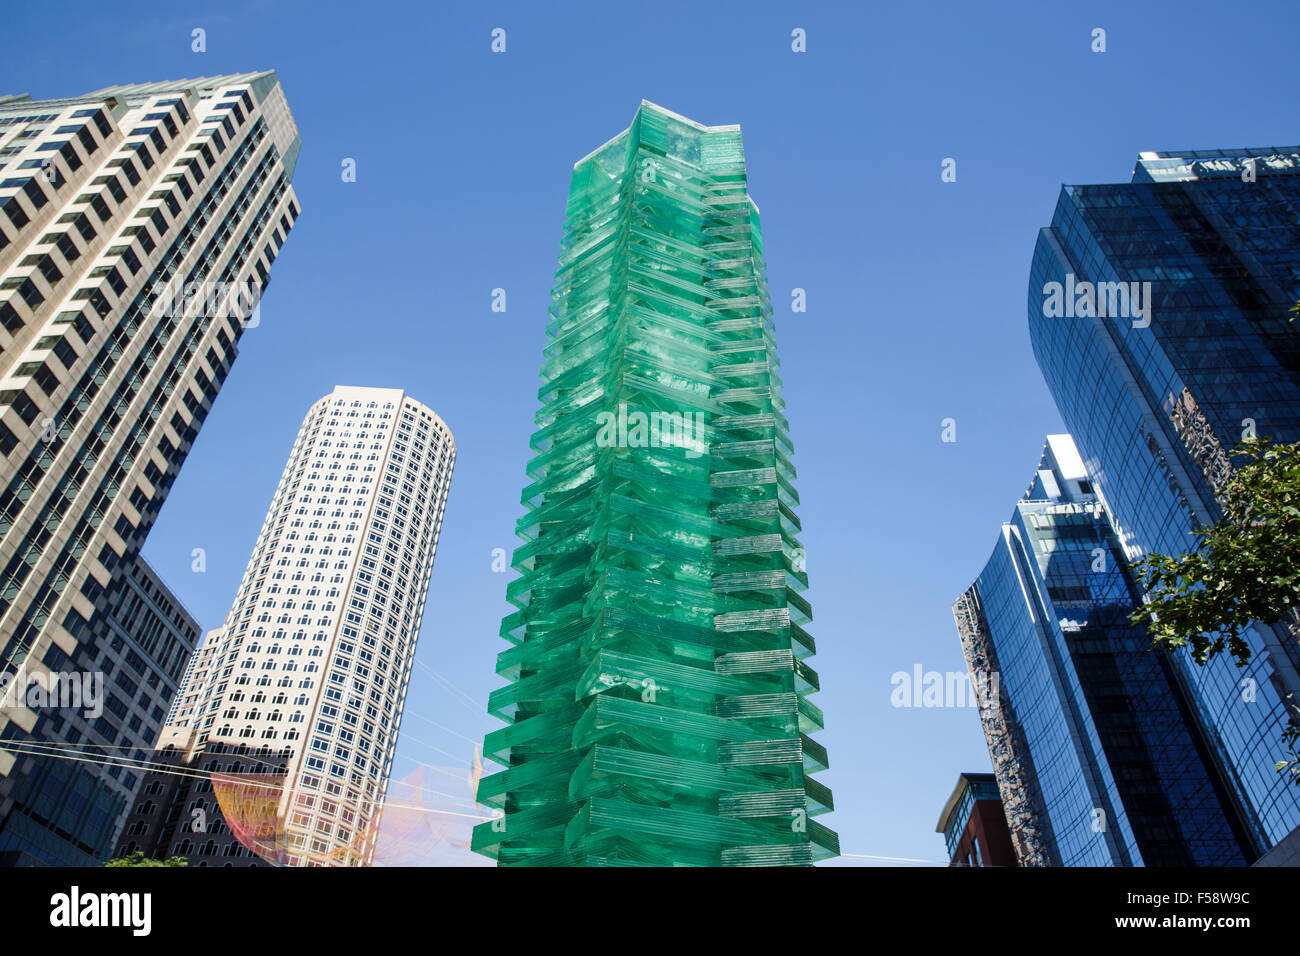 La tectónica de Transparencia: La Torre por Cristina Parreno Arquitectura en pantalla en Boston como parte de la Bienal de Diseño. Foto de stock